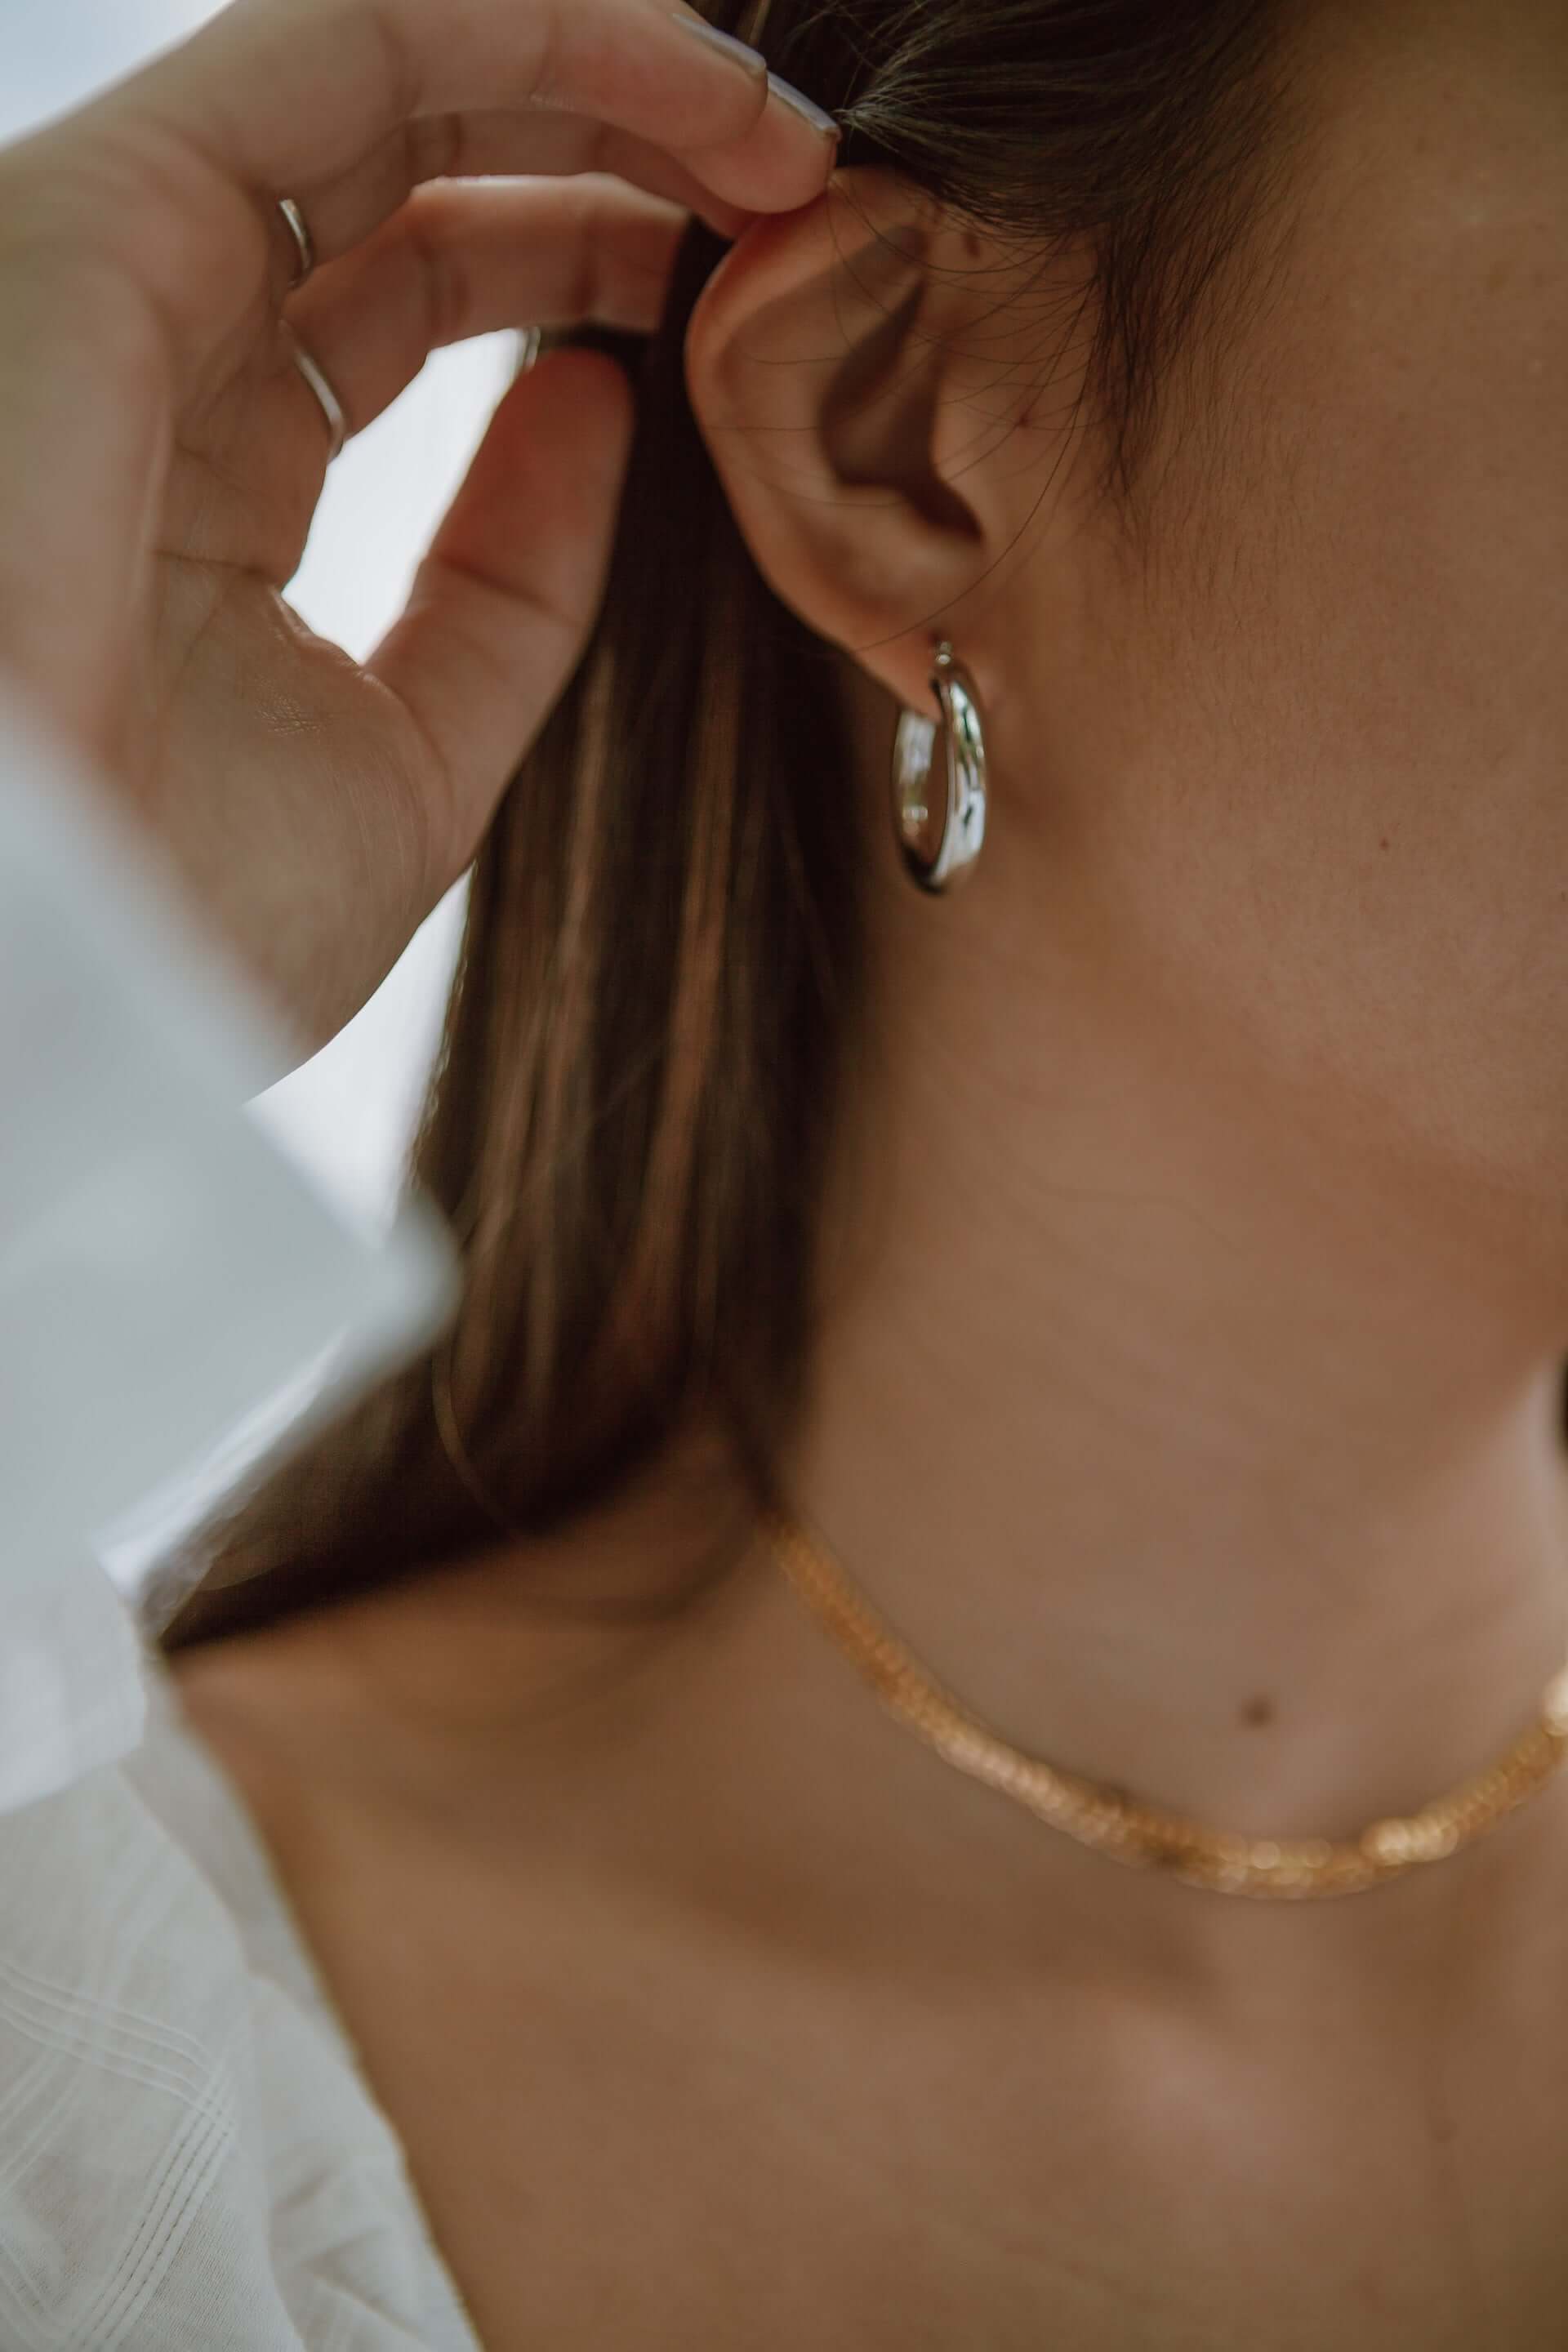 Earrings by FARAA Specialists in Minimalist Arabic Jewellery